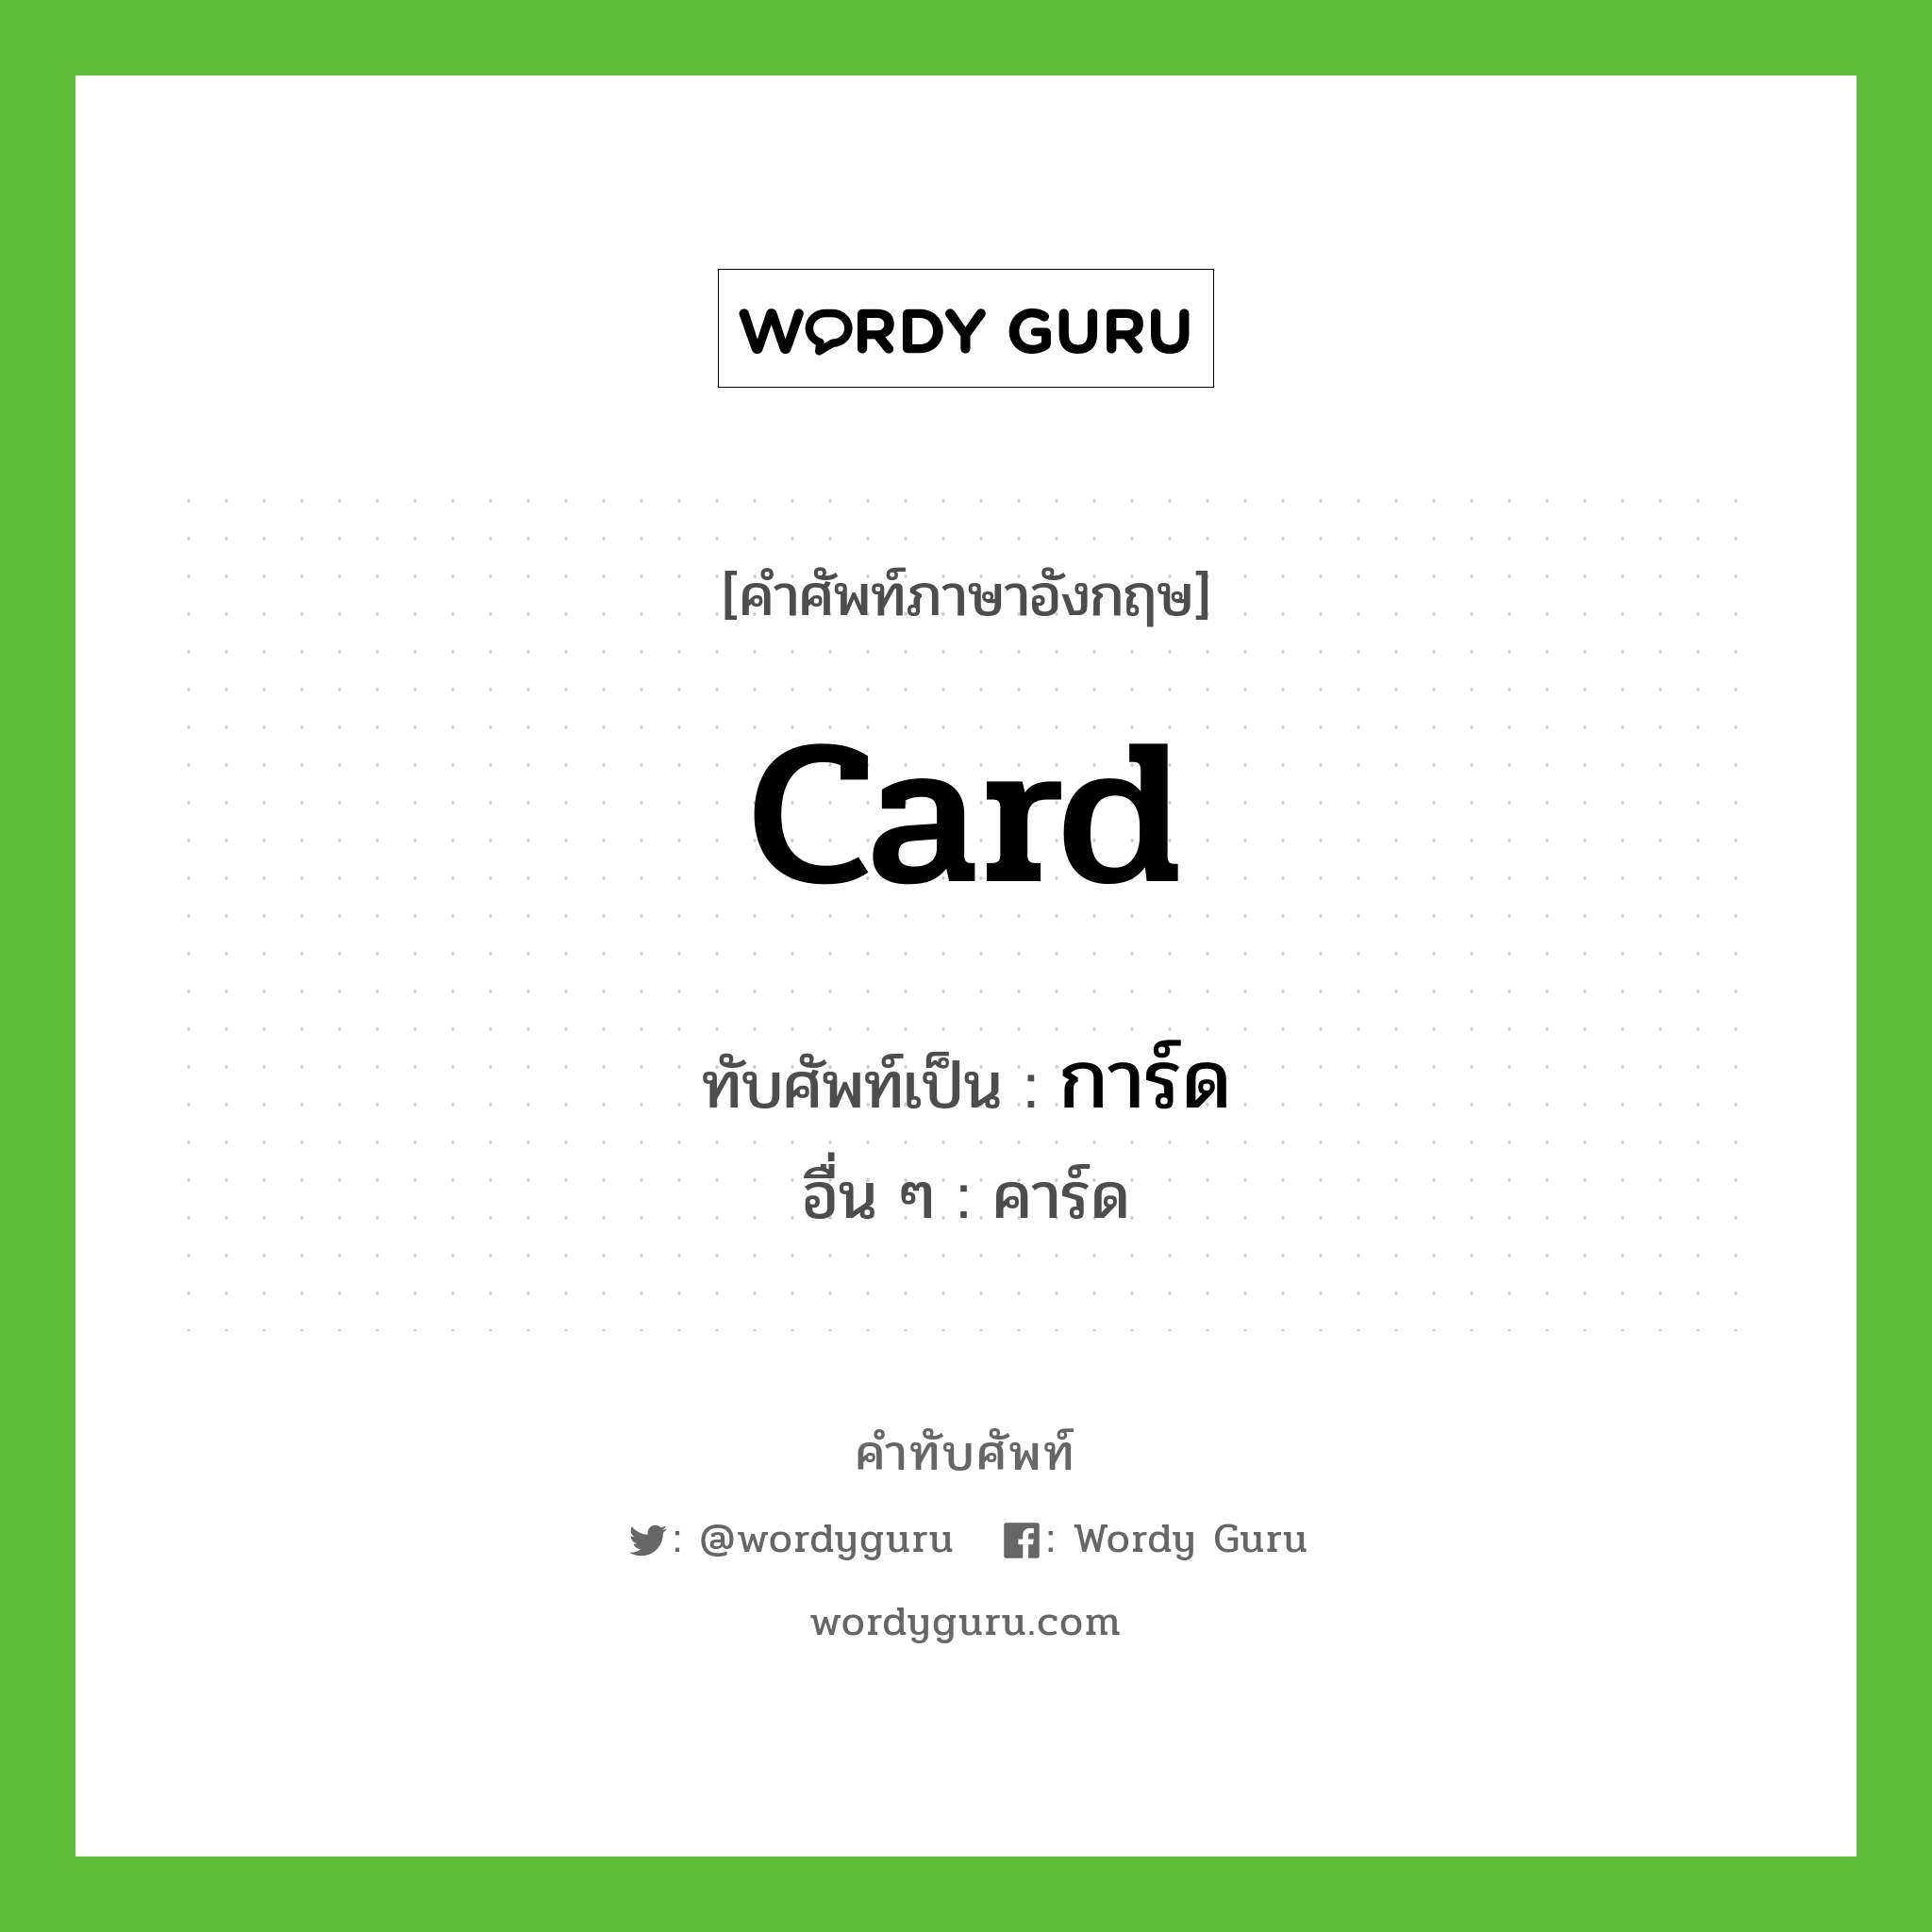 card เขียนเป็นคำไทยว่าอะไร?, คำศัพท์ภาษาอังกฤษ card ทับศัพท์เป็น การ์ด อื่น ๆ คาร์ด